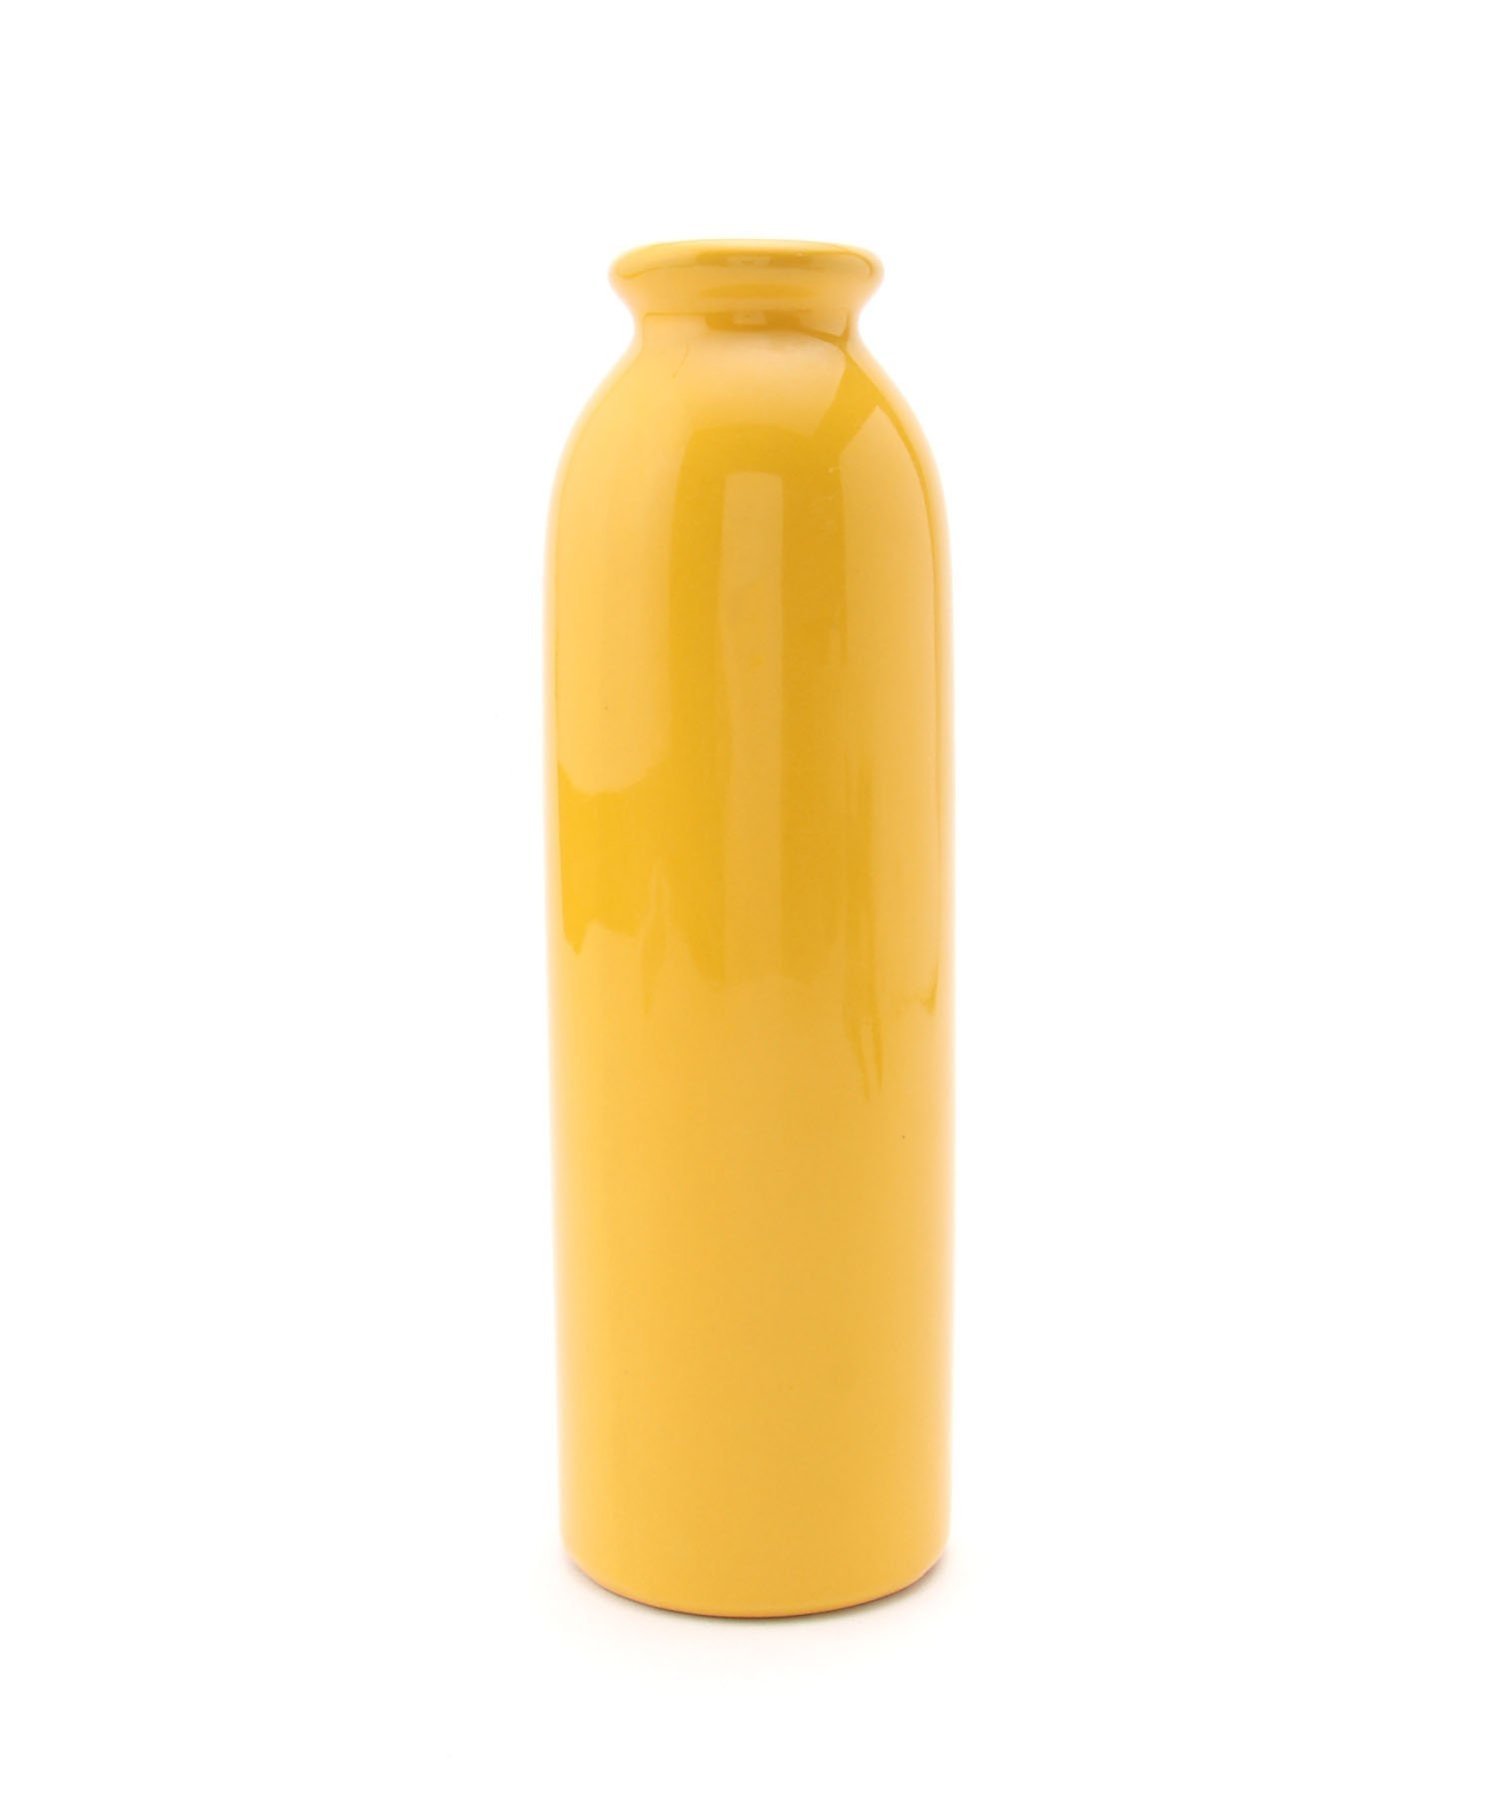 studio CLIP（スタディオクリップ）(U)ミルクボトルベース Lミルクボトル型のフラワーベース。縦長のタイプなので、一輪挿しにぴったり。カラフルな色合は置くだけでもインテリアのアクセントになってくれます。型番：993154-60-09 JS7467【採寸】サイズ高さ幅奥行きF(09)27.0cm8.4cm8.4cm商品のサイズについて【商品詳細】サイズ：F(09)※画面上と実物では多少色具合が異なって見える場合もございます。ご了承ください。商品のカラーについて 【予約商品について】 ※「先行予約販売中」「予約販売中」をご注文の際は予約商品についてをご確認ください。■重要なお知らせ※ 当店では、ギフト配送サービス及びラッピングサービスを行っておりません。ご注文者様とお届け先が違う場合でも、タグ（値札）付「納品書 兼 返品連絡票」同梱の状態でお送り致しますのでご了承ください。 ラッピング・ギフト配送について※ 2点以上ご購入の場合、全ての商品が揃い次第一括でのお届けとなります。お届け予定日の異なる商品をお買い上げの場合はご注意下さい。お急ぎの商品がございましたら分けてご購入いただきますようお願い致します。発送について ※ 買い物カートに入れるだけでは在庫確保されませんのでお早めに購入手続きをしてください。当店では在庫を複数サイトで共有しているため、同時にご注文があった場合、売切れとなってしまう事がございます。お手数ですが、ご注文後に当店からお送りする「ご注文内容の確認メール」をご確認ください。ご注文の確定について ※ Rakuten Fashionの商品ページに記載しているメーカー希望小売価格は、楽天市場「商品価格ナビ」に登録されている価格に準じています。 商品の価格についてstudio CLIPstudio CLIPのフラワーベース・花瓶インテリア・生活雑貨ご注文・お届けについて発送ガイドラッピンググッズ3,980円以上送料無料ご利用ガイド